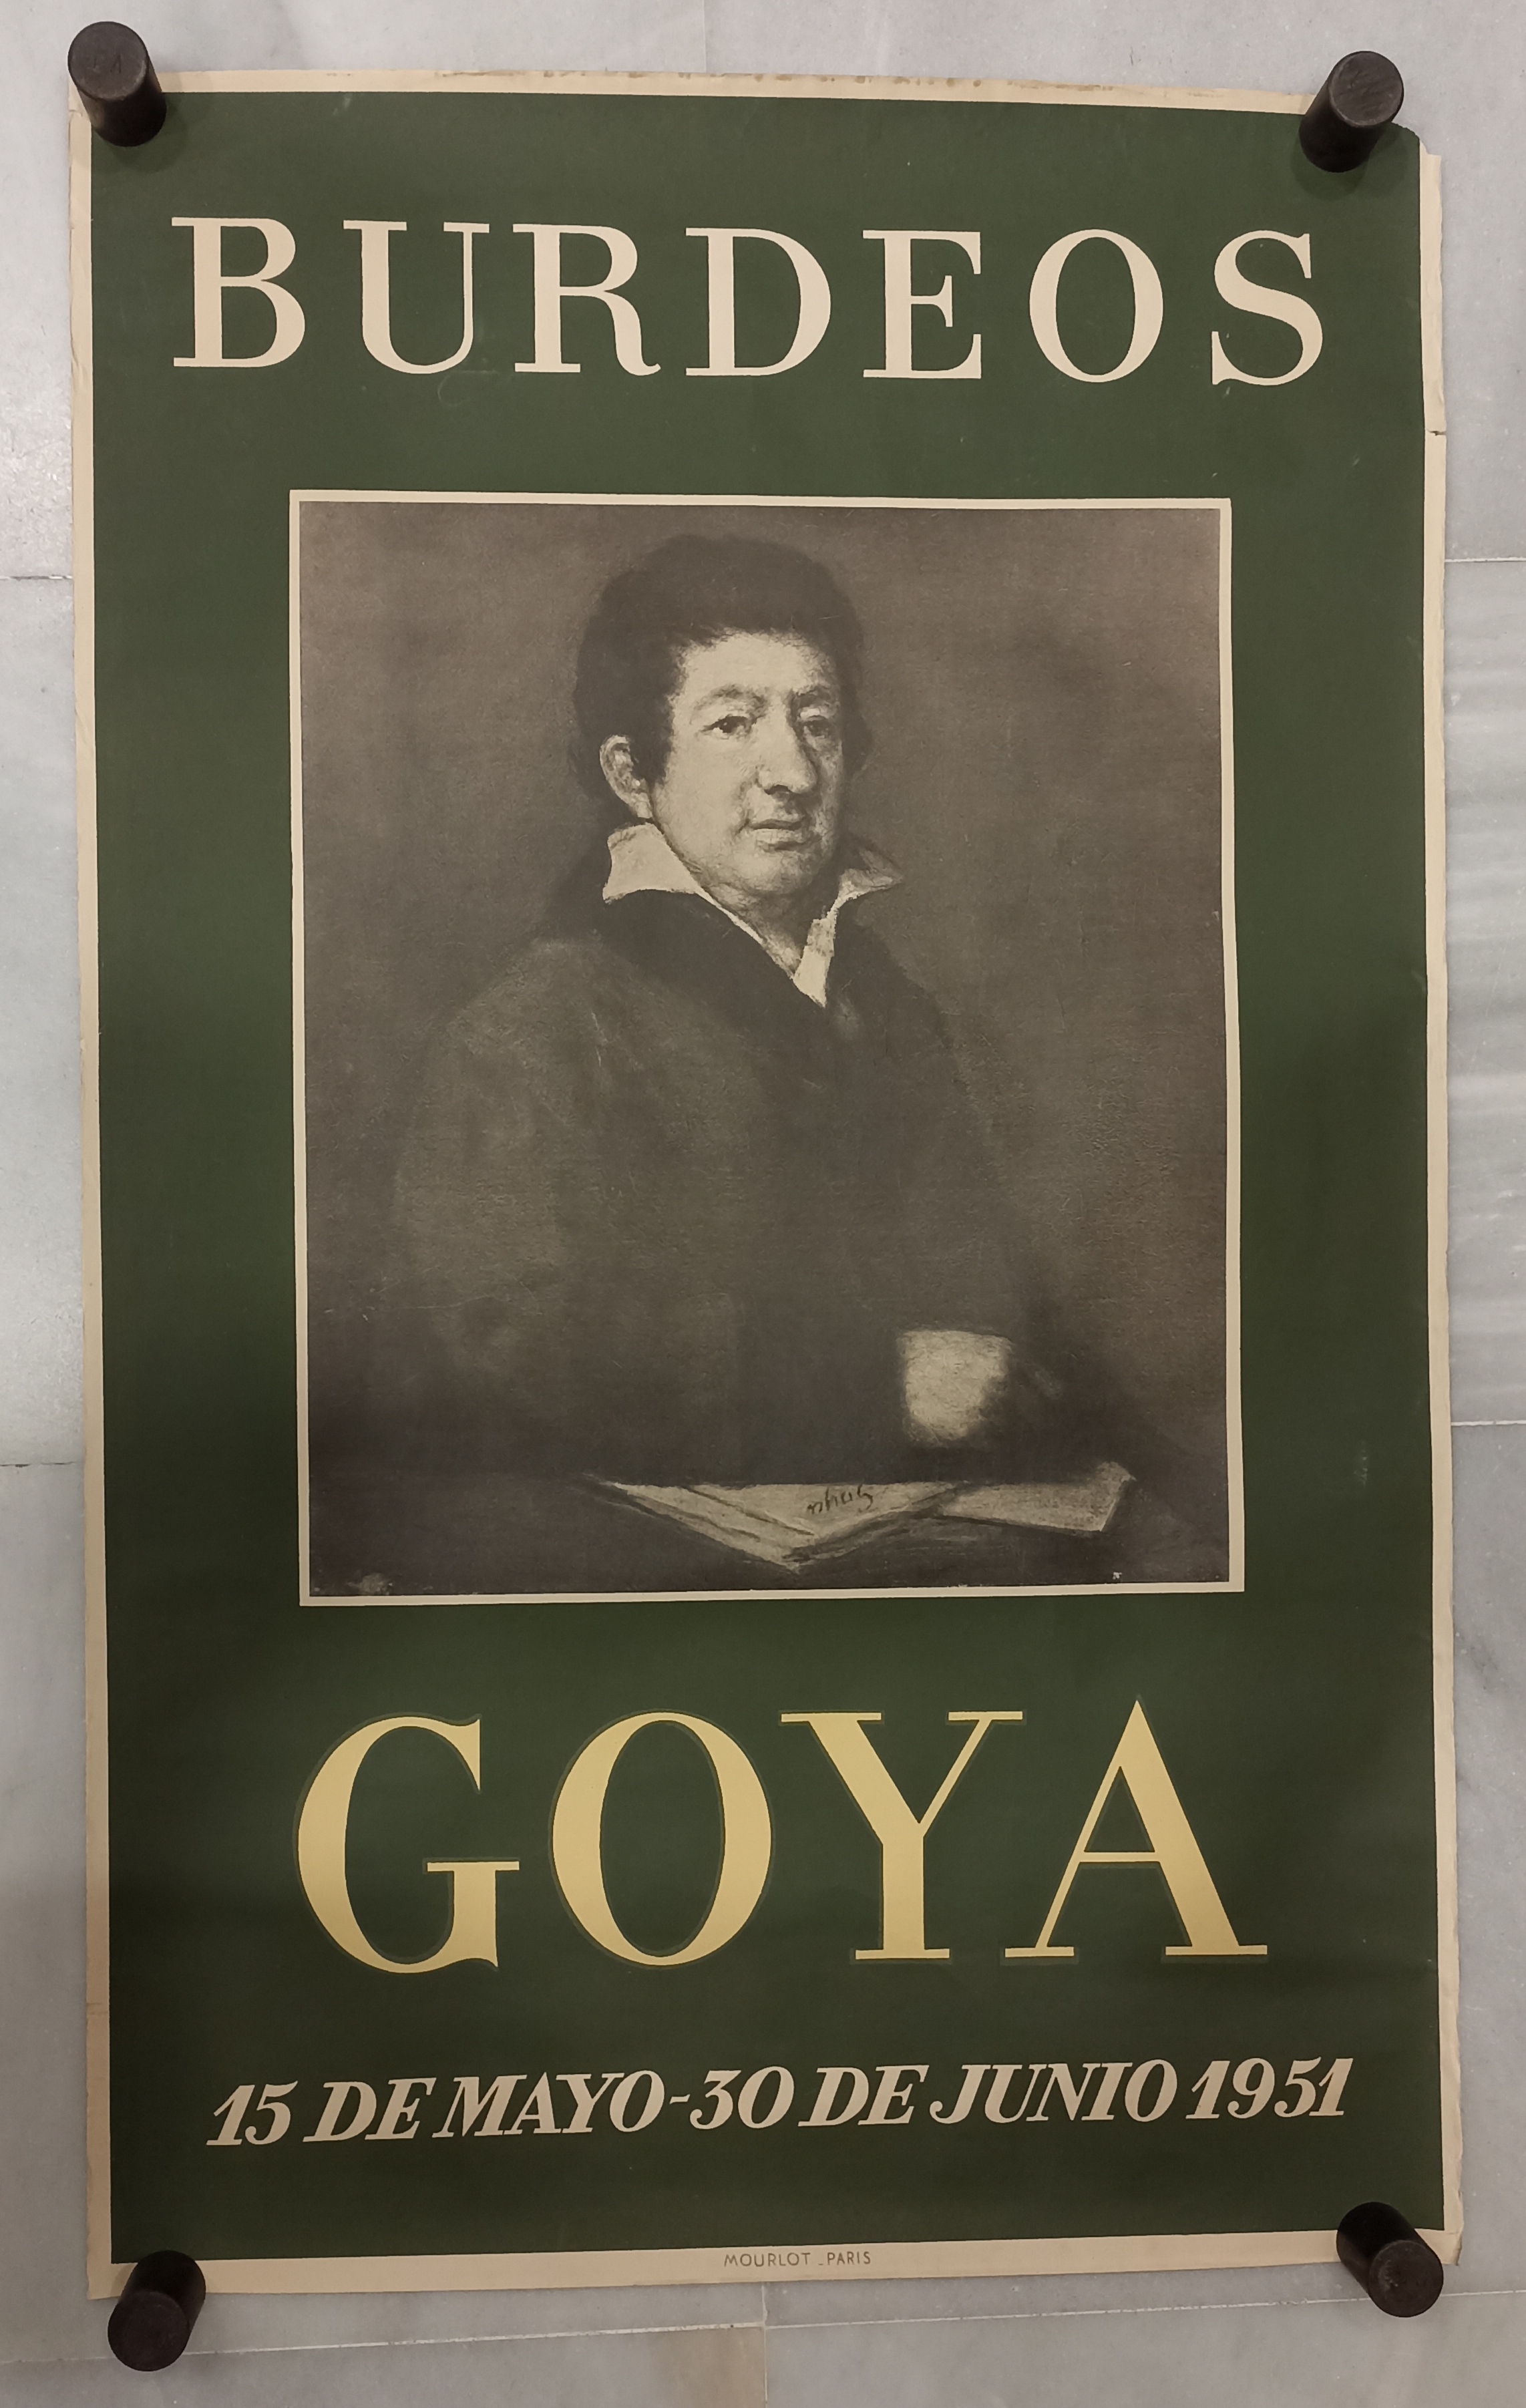 Goya, Burdeos (15 Mayo-30 Junio 1951). 100x62,5 cm. Mourlot París